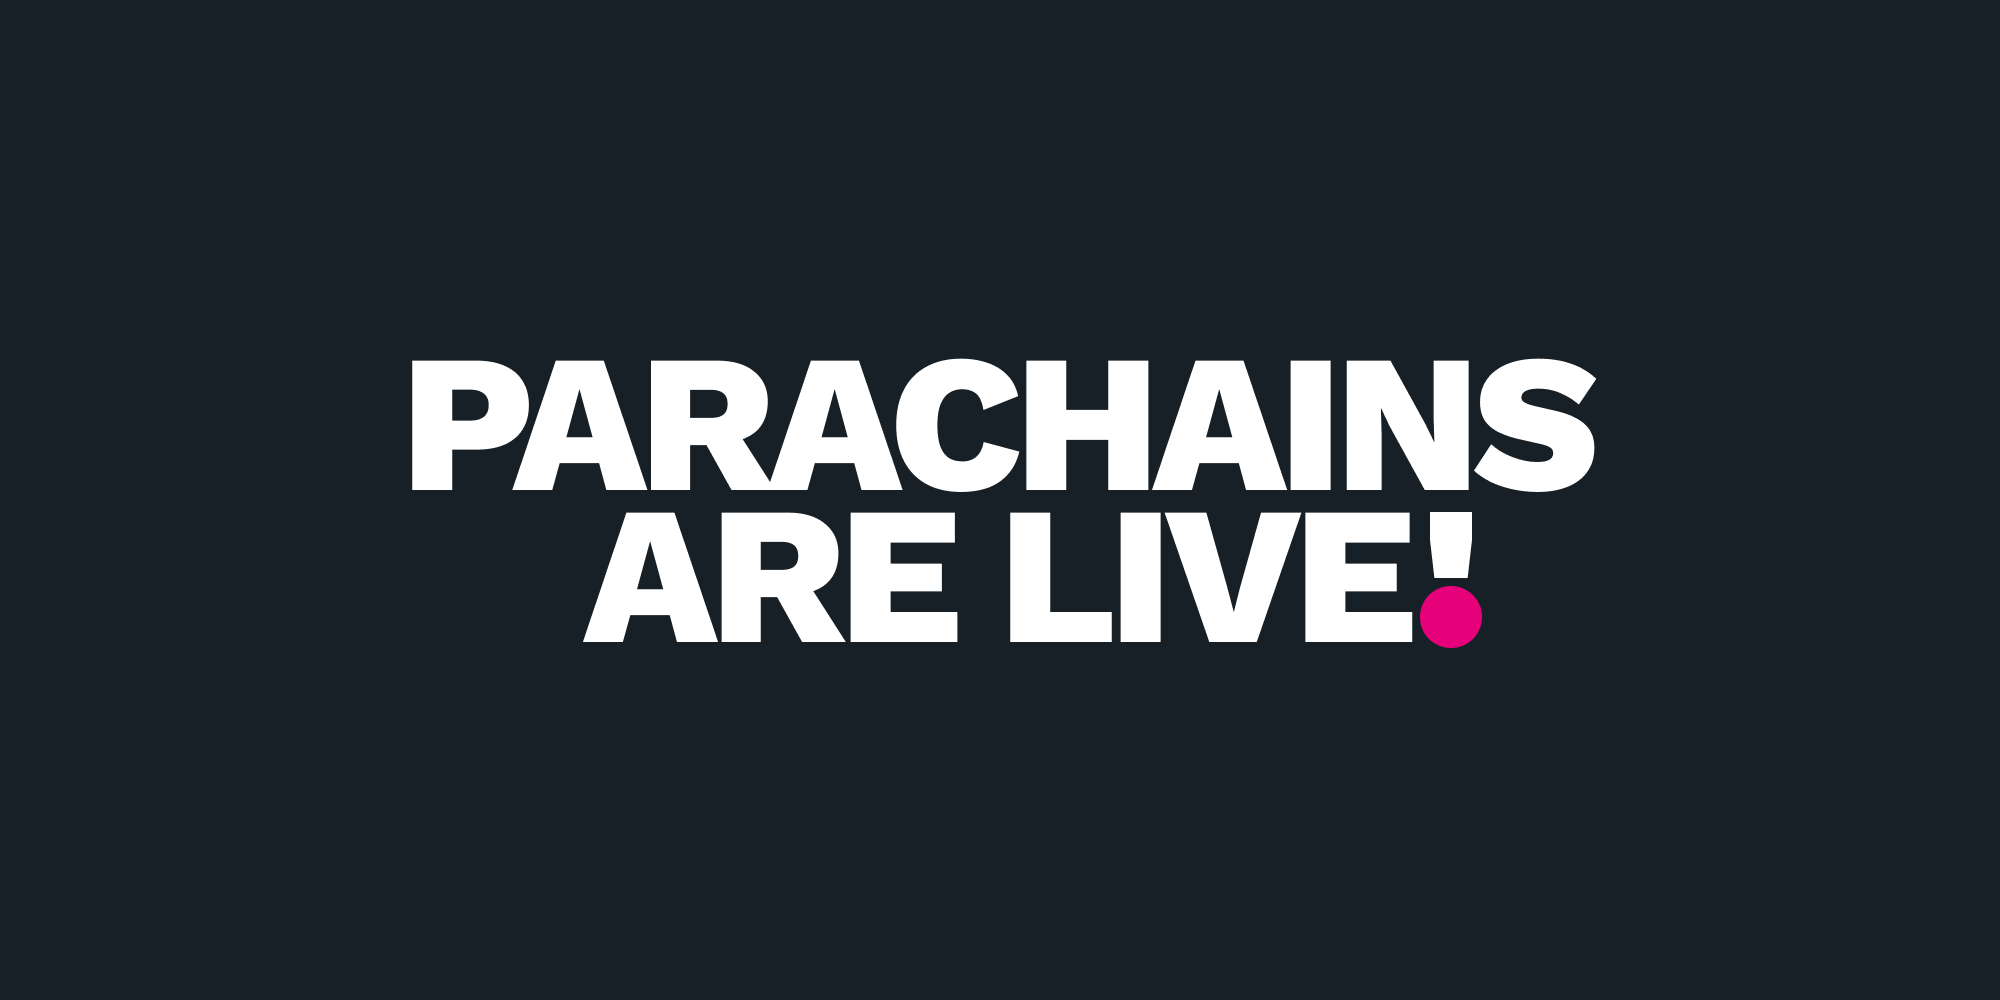 Le parachain sono live! Il lancio di Polkadot è ora completo